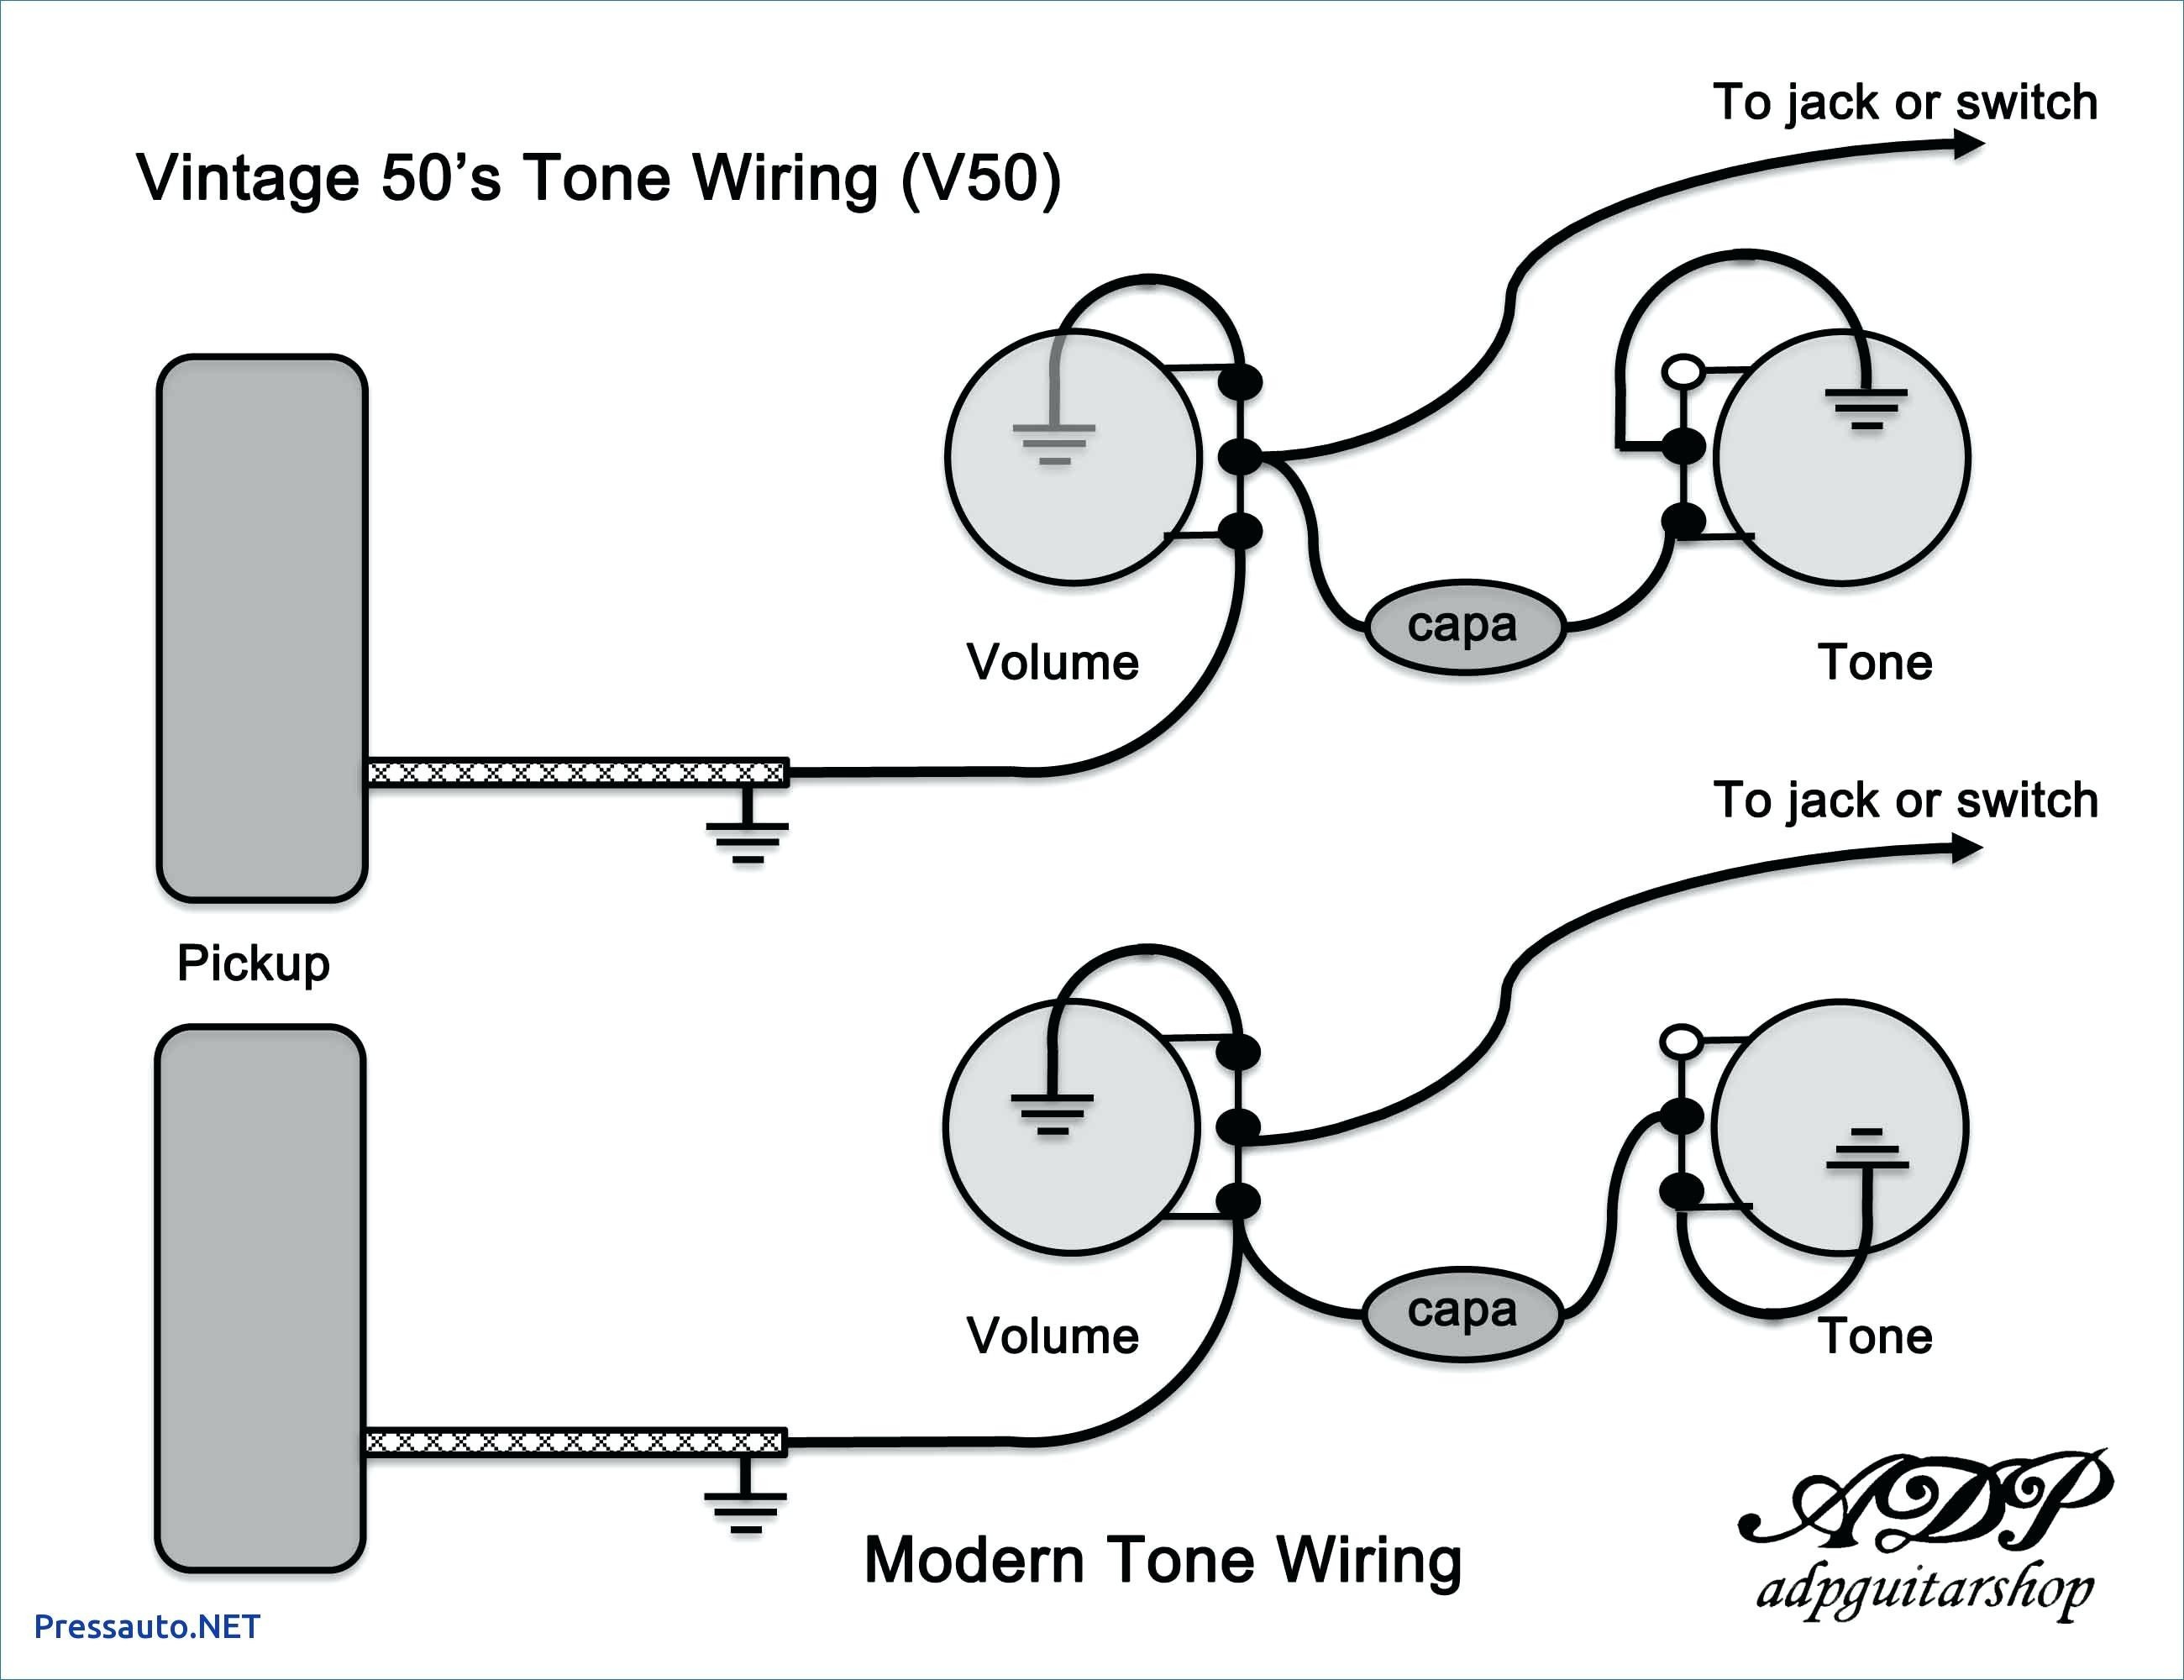 1970 sg wiring diagram data wiring diagrams u2022 rh 66 42 64 5 Epiphone Special 2 Wiring Diagram Guitar Wiring Diagrams